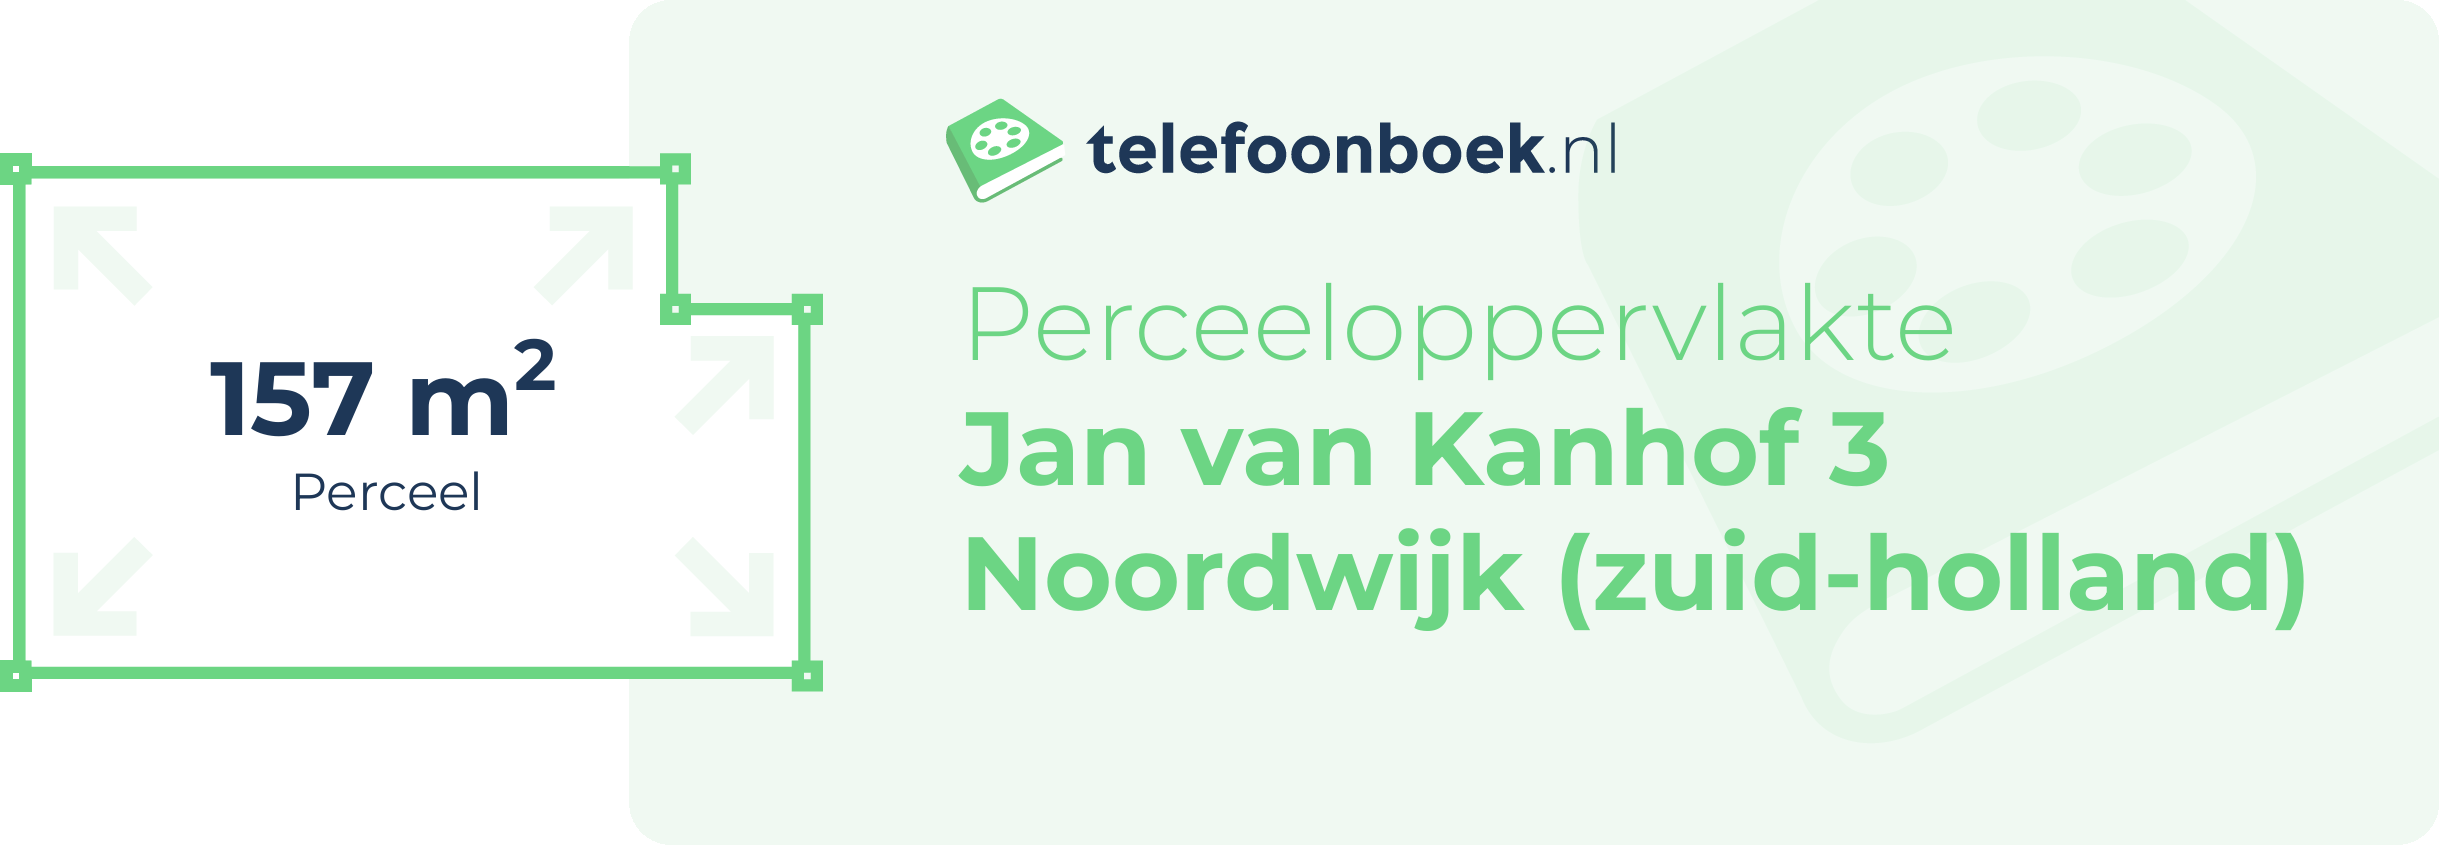 Perceeloppervlakte Jan Van Kanhof 3 Noordwijk (Zuid-Holland)